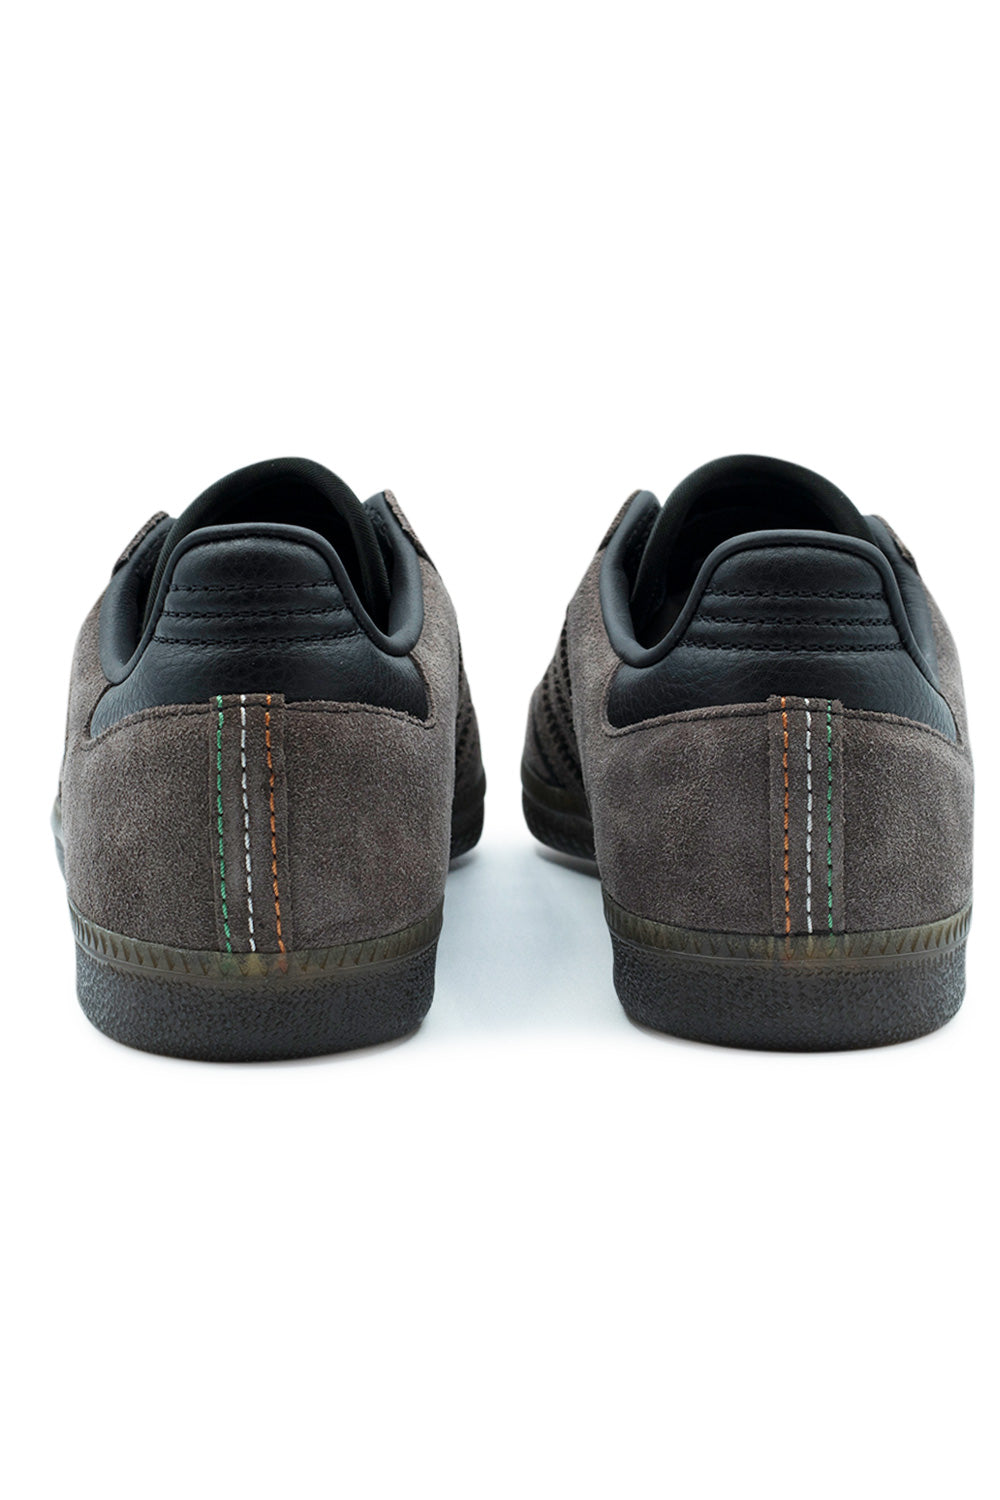 Adidas Samba ADV Shoe (Kader Sylla) Core Black / Brown / Gum - BONKERS